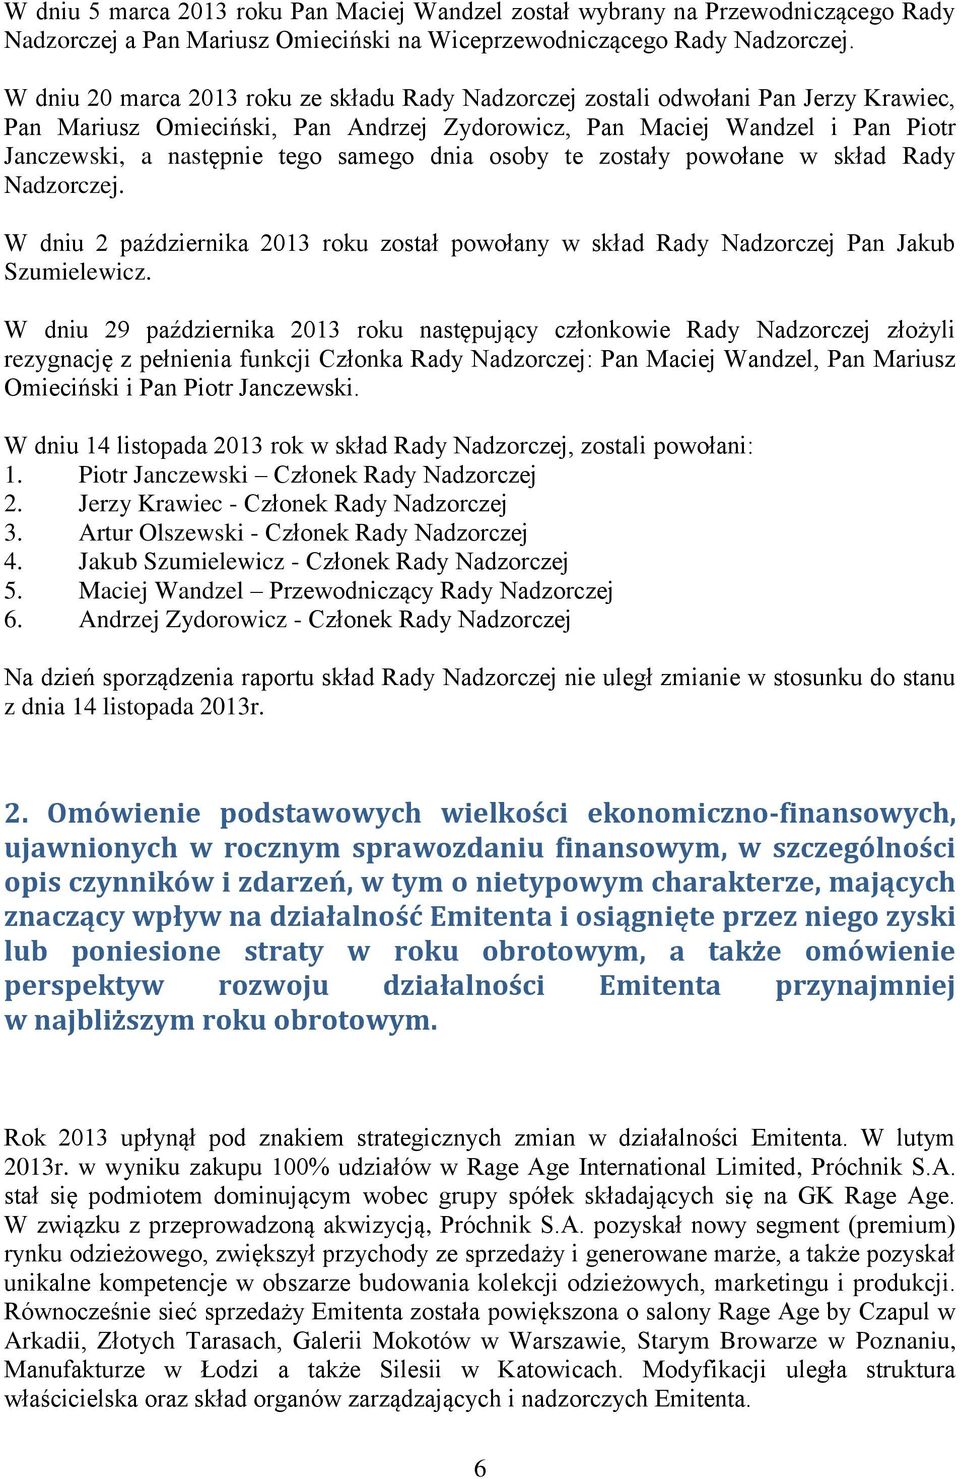 samego dnia osoby te zostały powołane w skład Rady Nadzorczej. W dniu 2 października 2013 roku został powołany w skład Rady Nadzorczej Pan Jakub Szumielewicz.